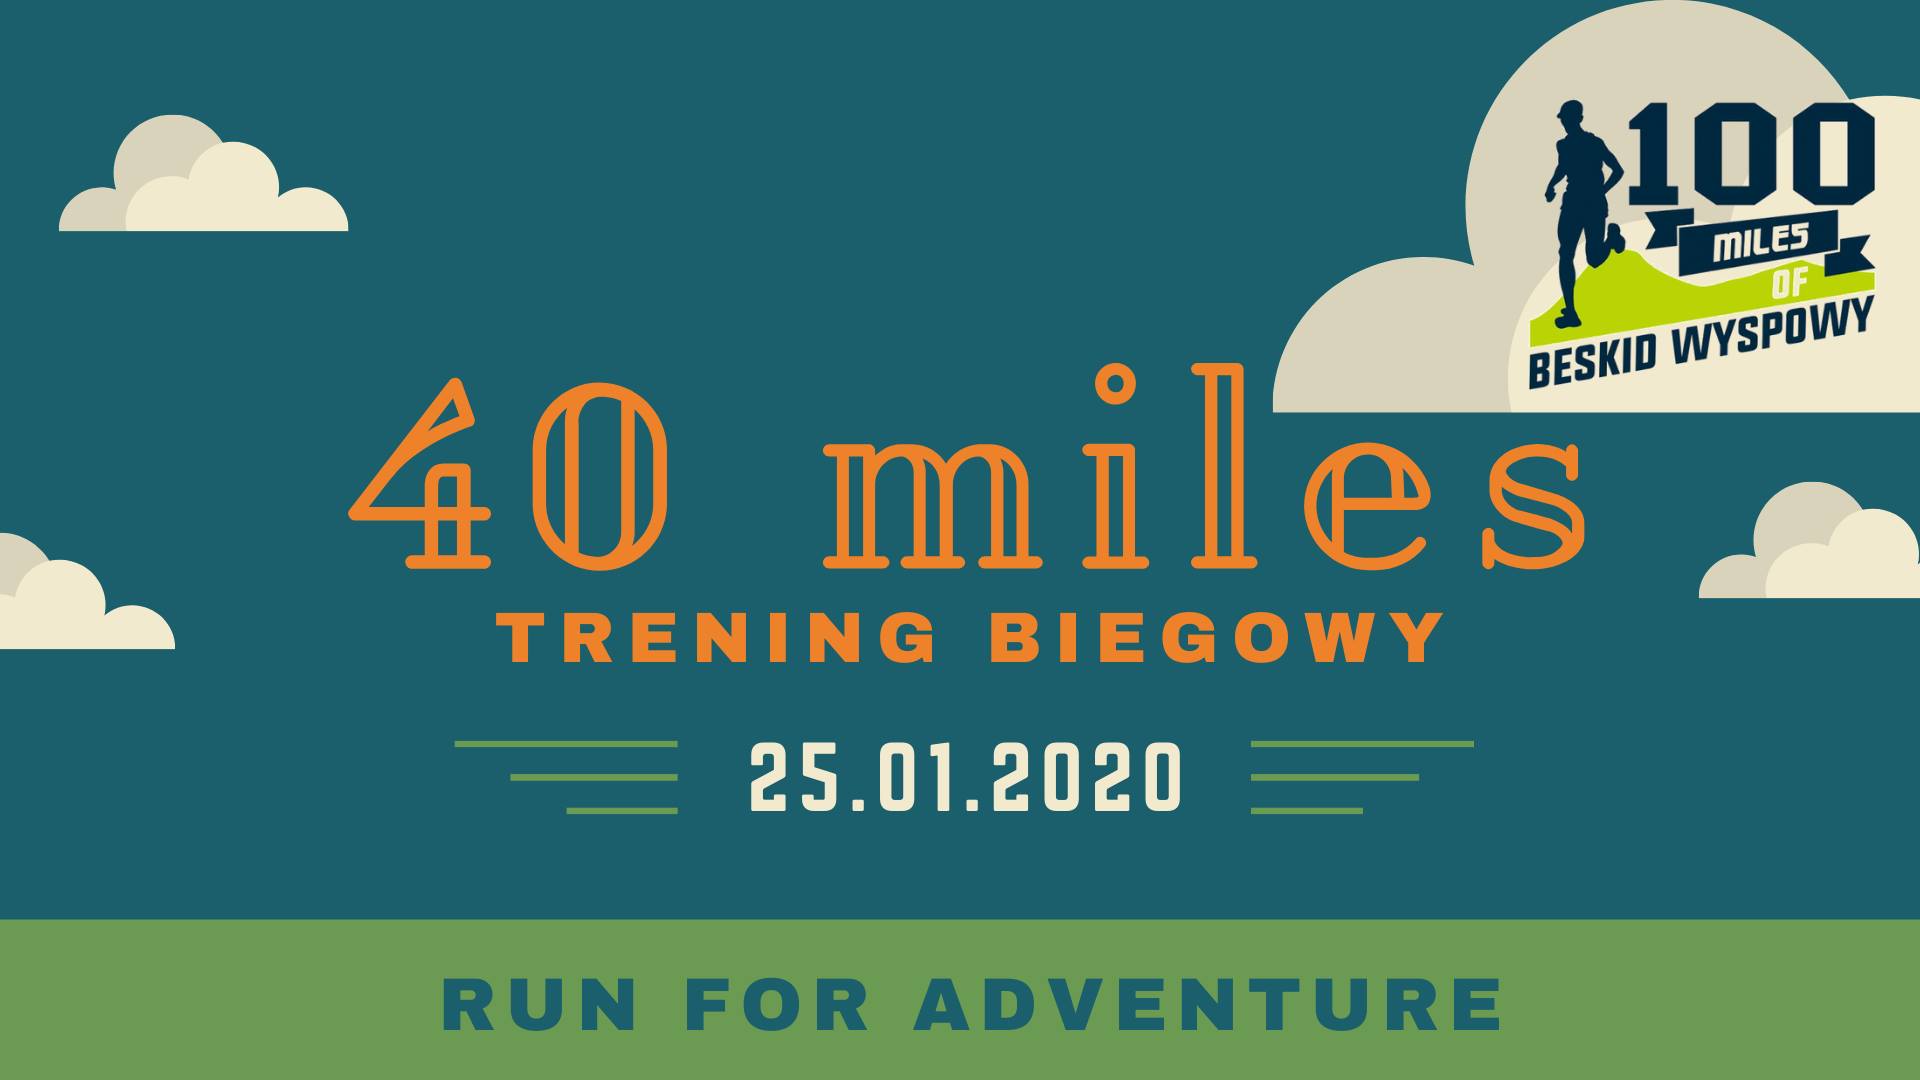 bieg 40 Miles of Beskid Wyspowy - logo